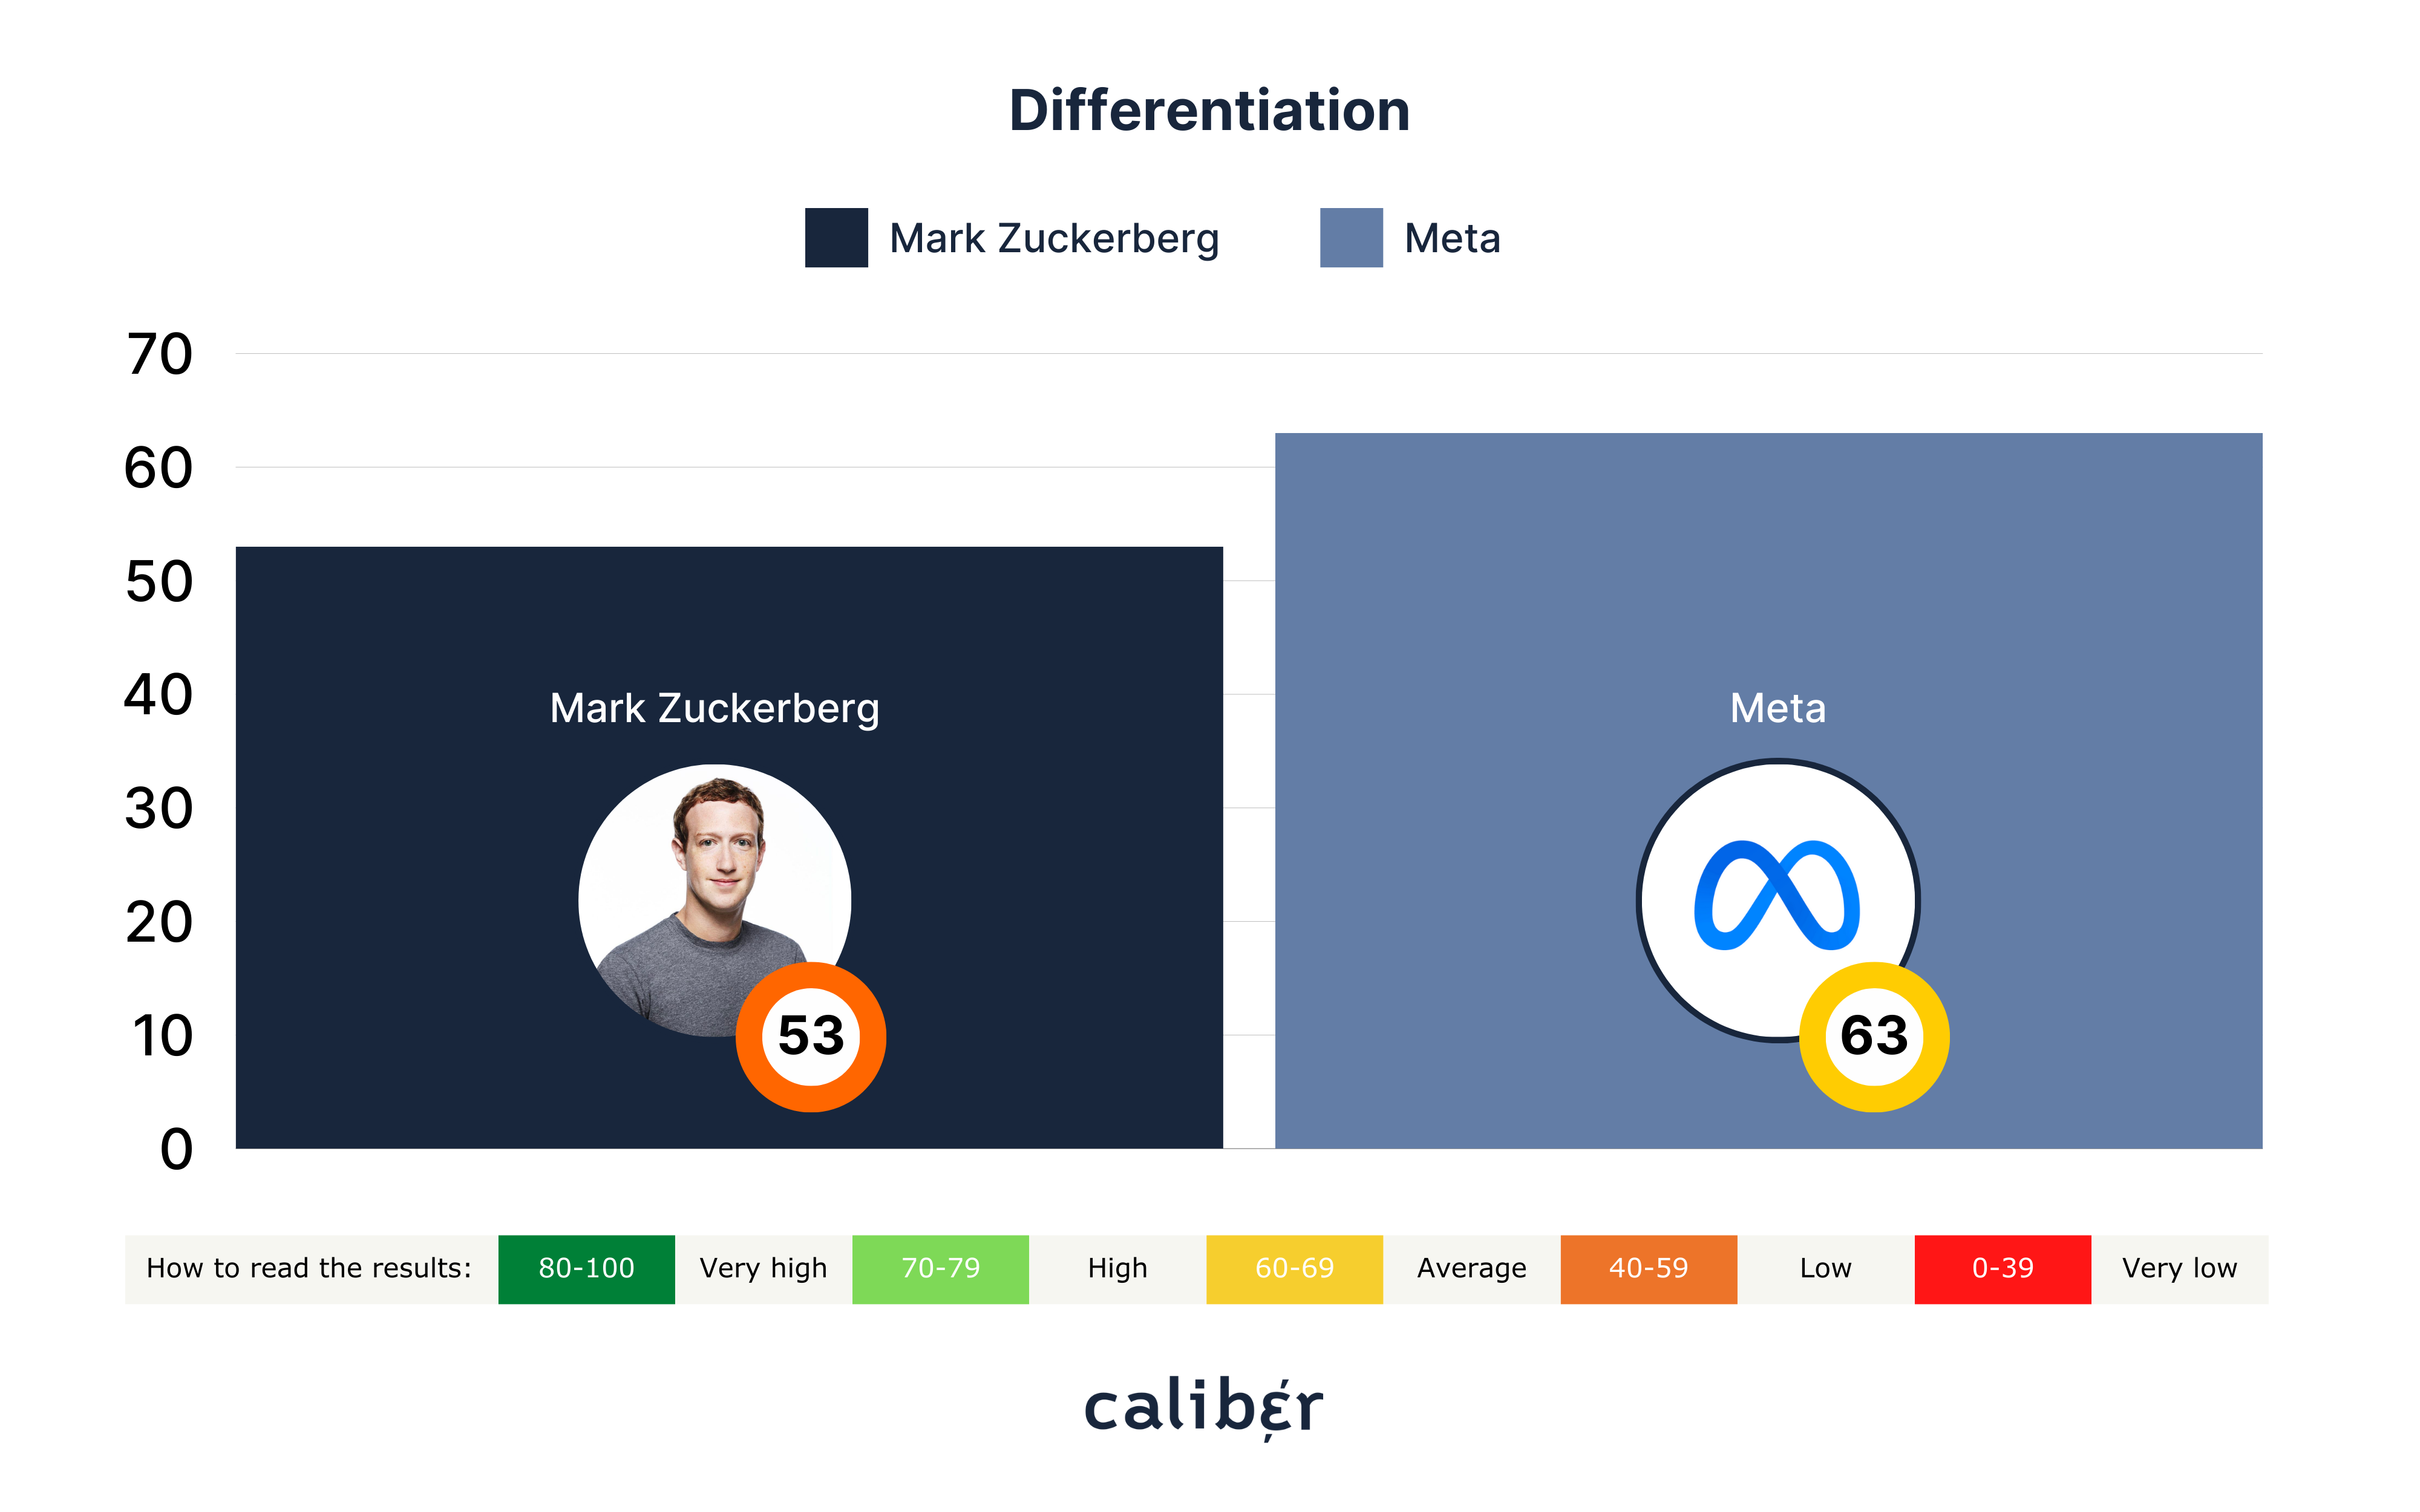 Mark Zuckerberg Differentiation Score